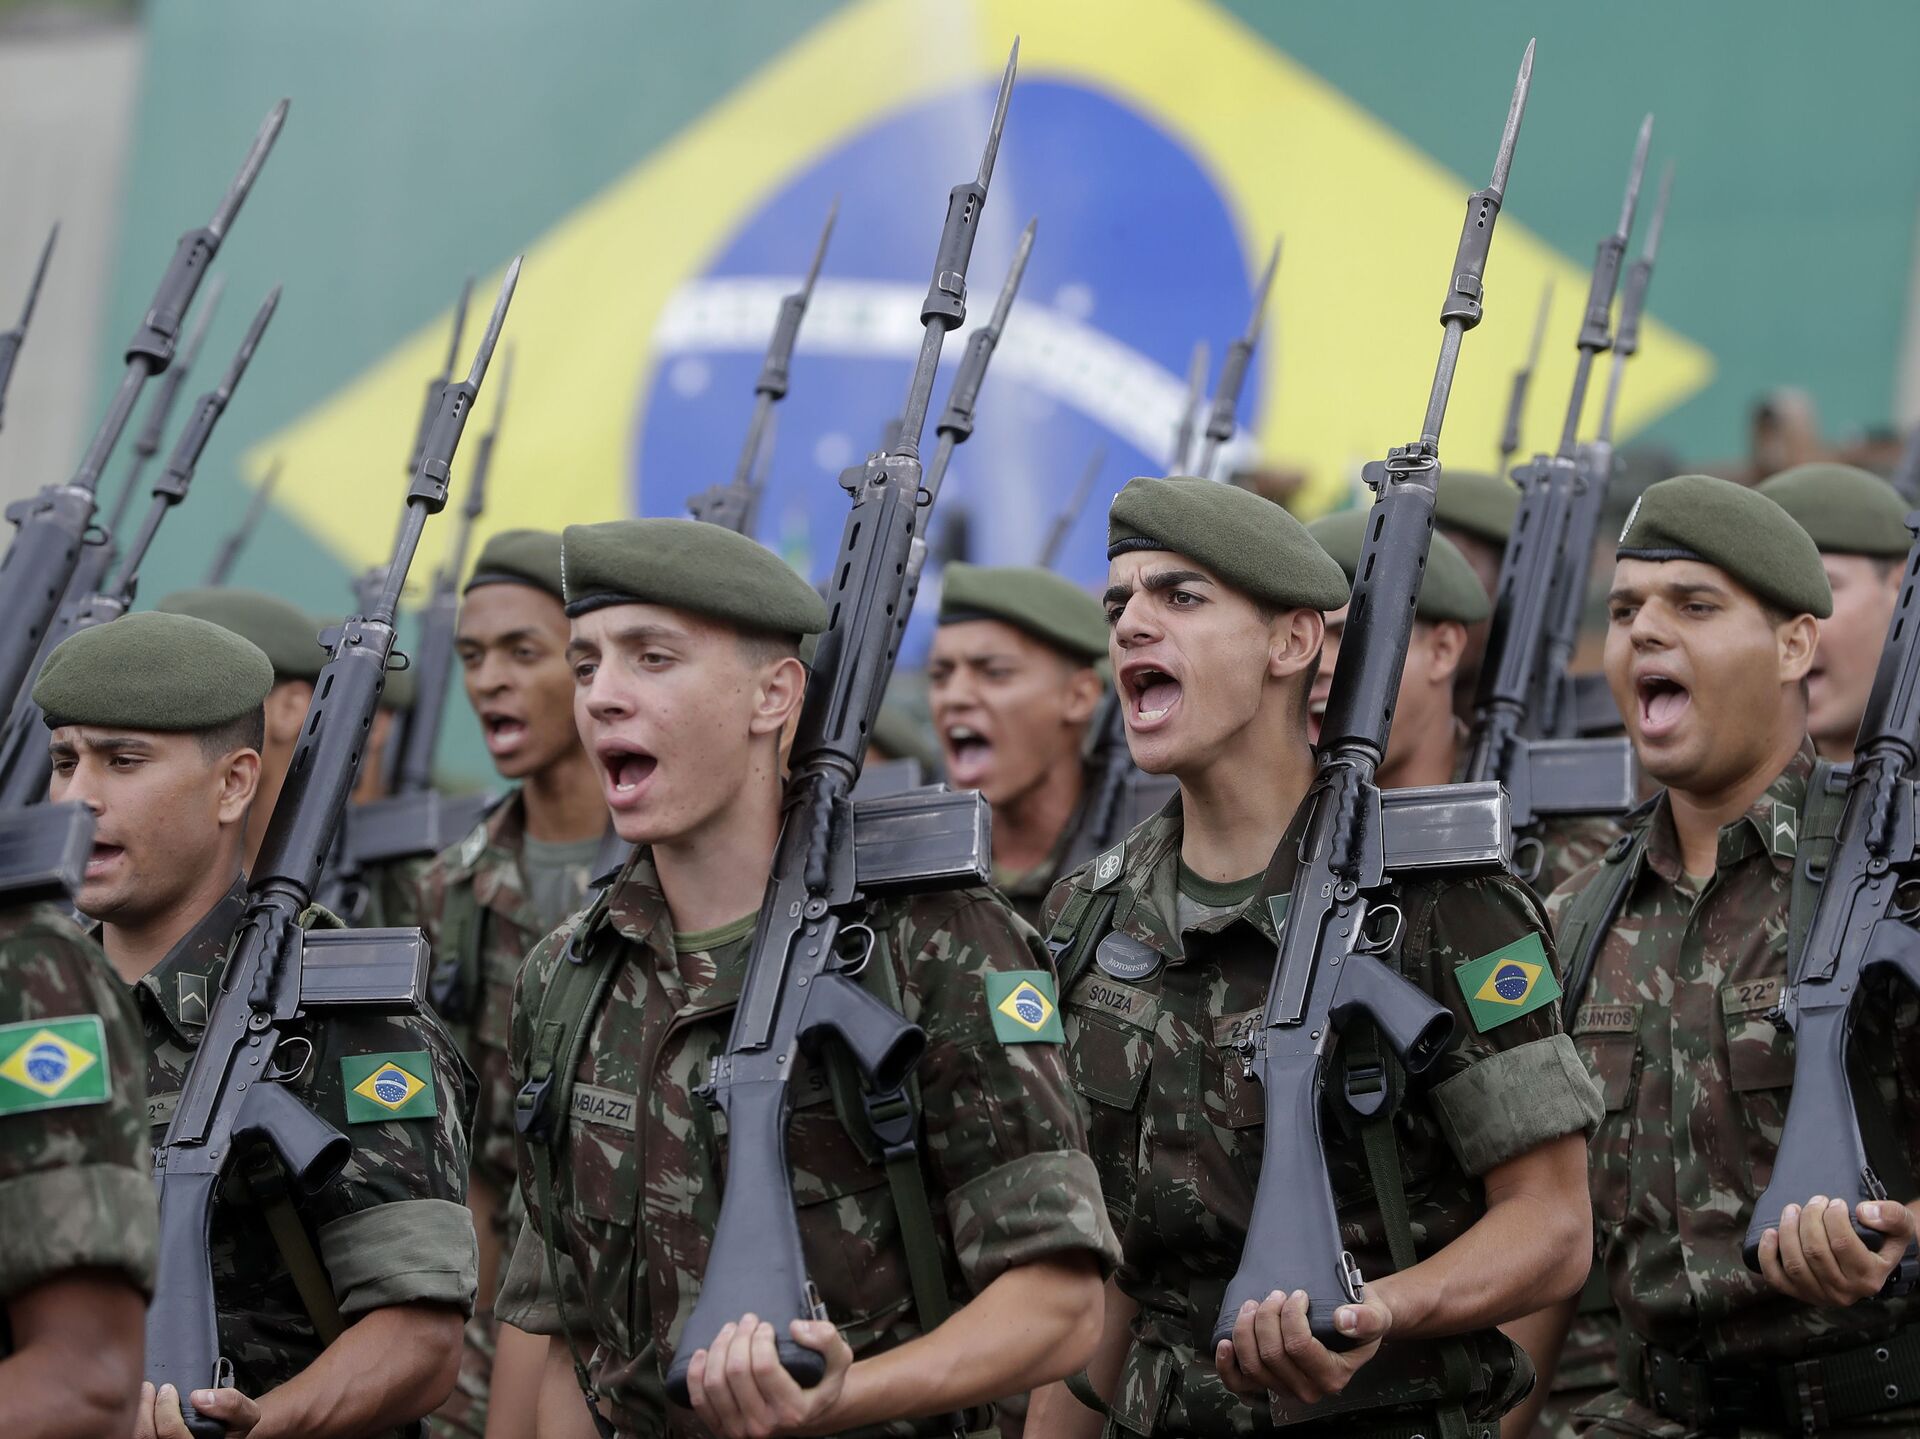 Simulados Exército Brasileiro - SimuladosBR